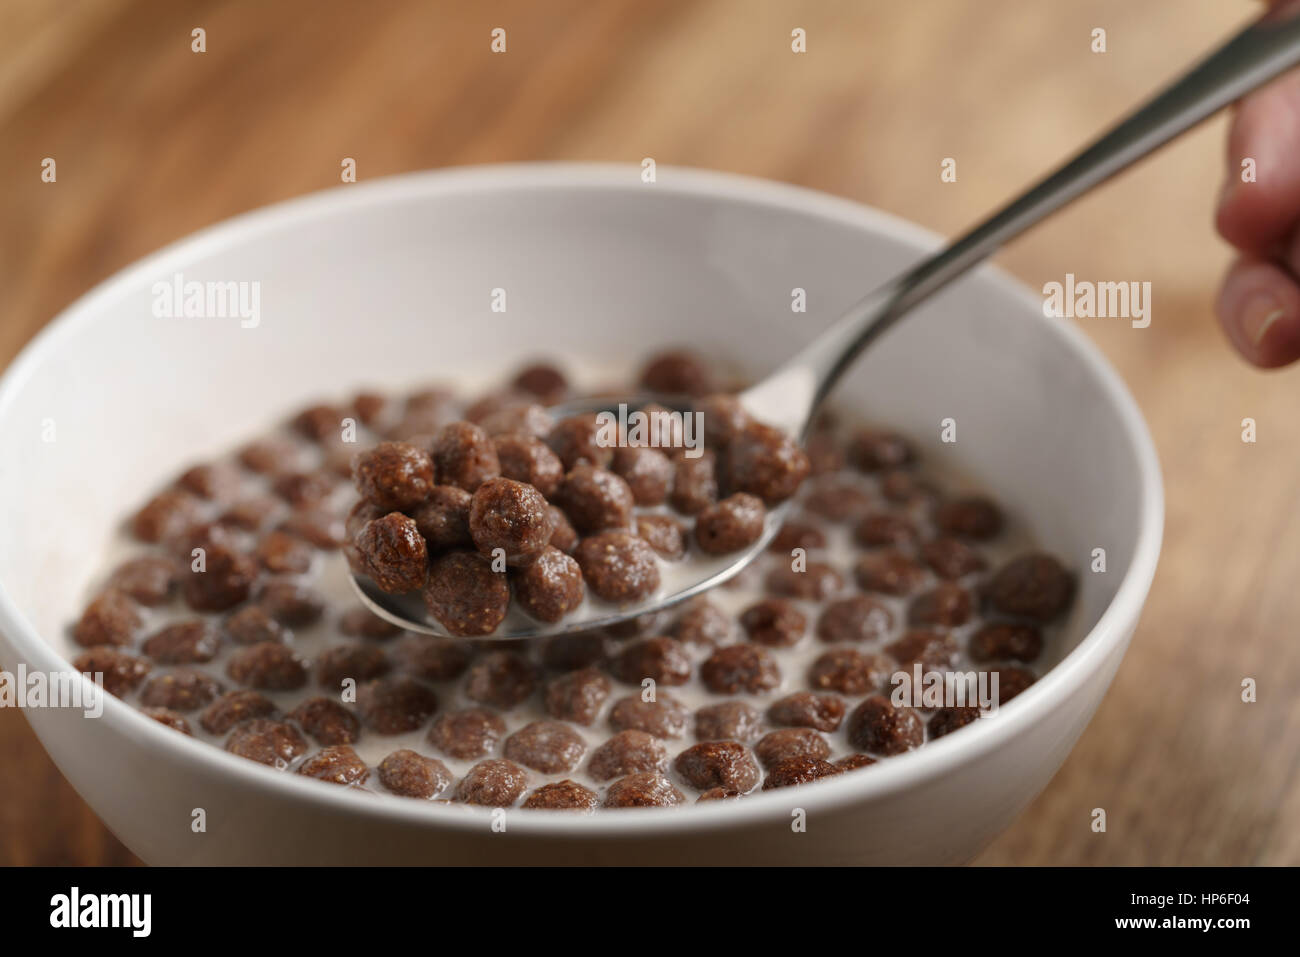 Comer con cuchara bolas de cereales de chocolate con leche en el recipiente blanco para desayunar en la mesa de madera, enfoque superficial Foto de stock